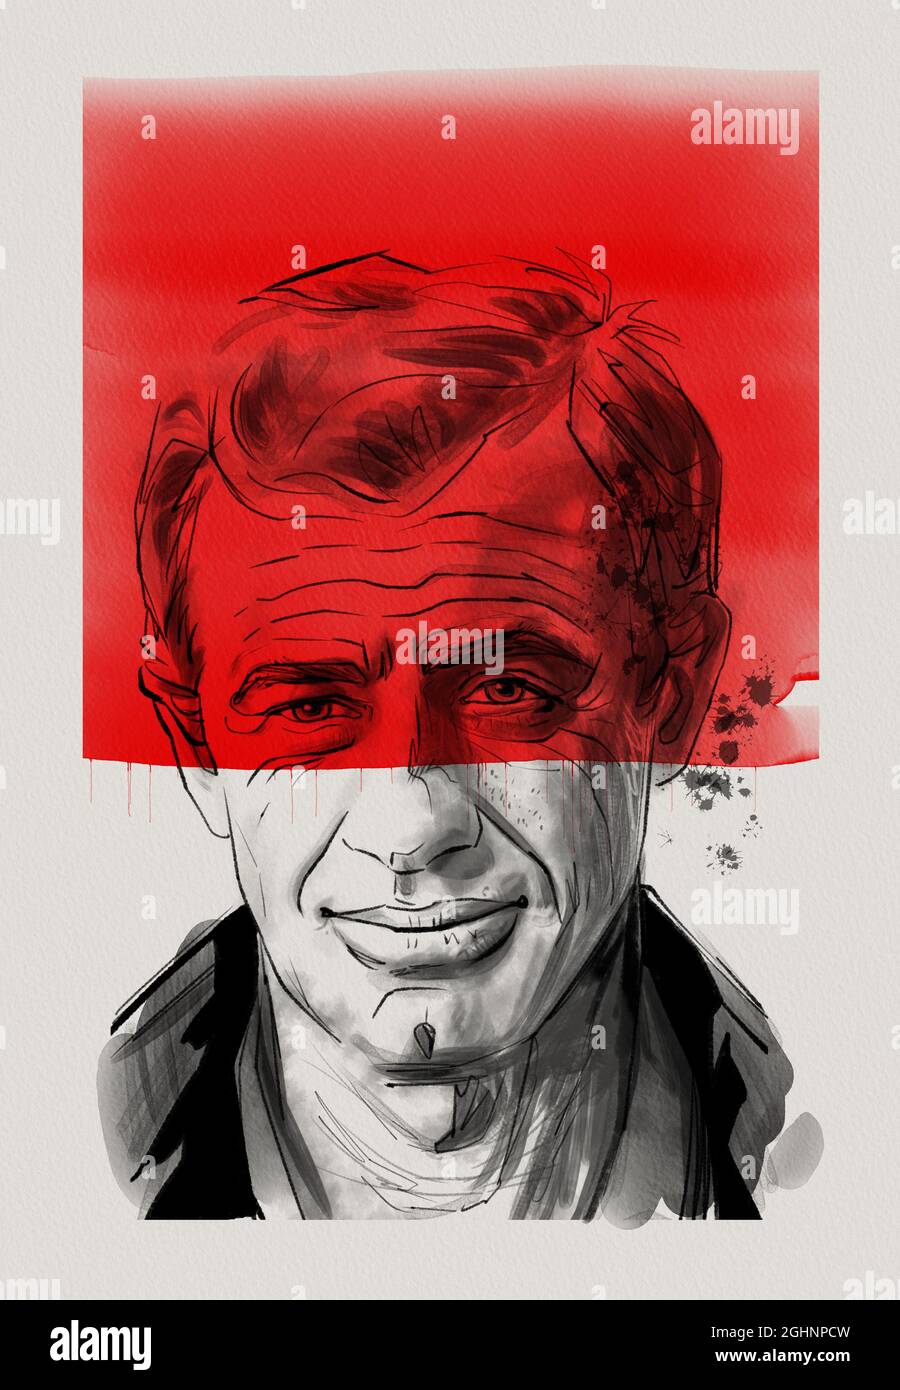 Ritratto dell'attore Jean Paul Belmondo, cartone animato, stile fumetto,  arte grafica, inchiostro, acquerello, nero e rosso su carta bianca Foto  stock - Alamy